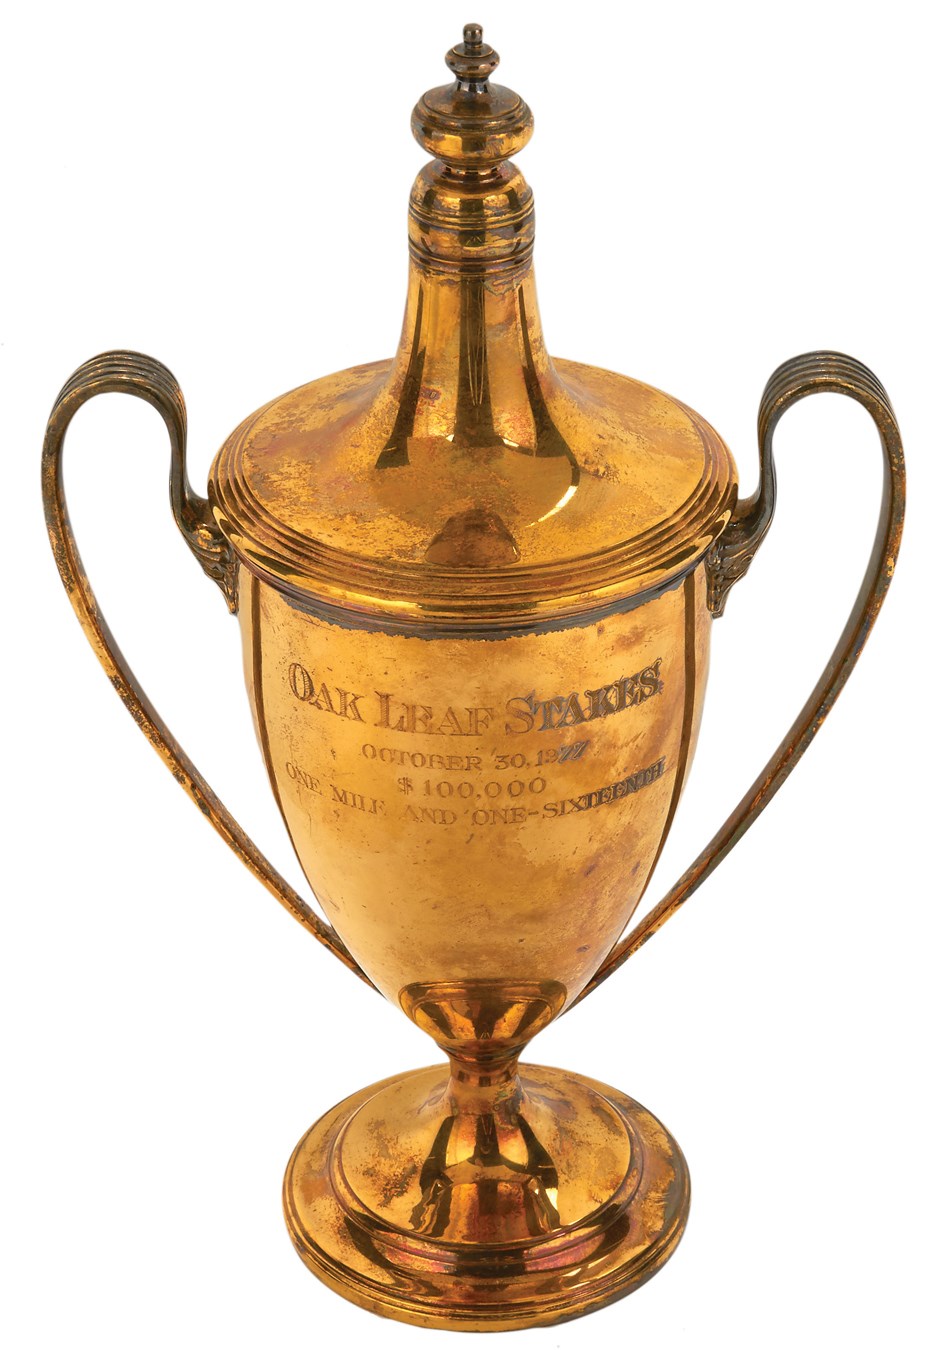 - "B. Thoughtful" 1977 Oak Leaf Stakes Silver Trophy w/Gold Wash by Tiffany